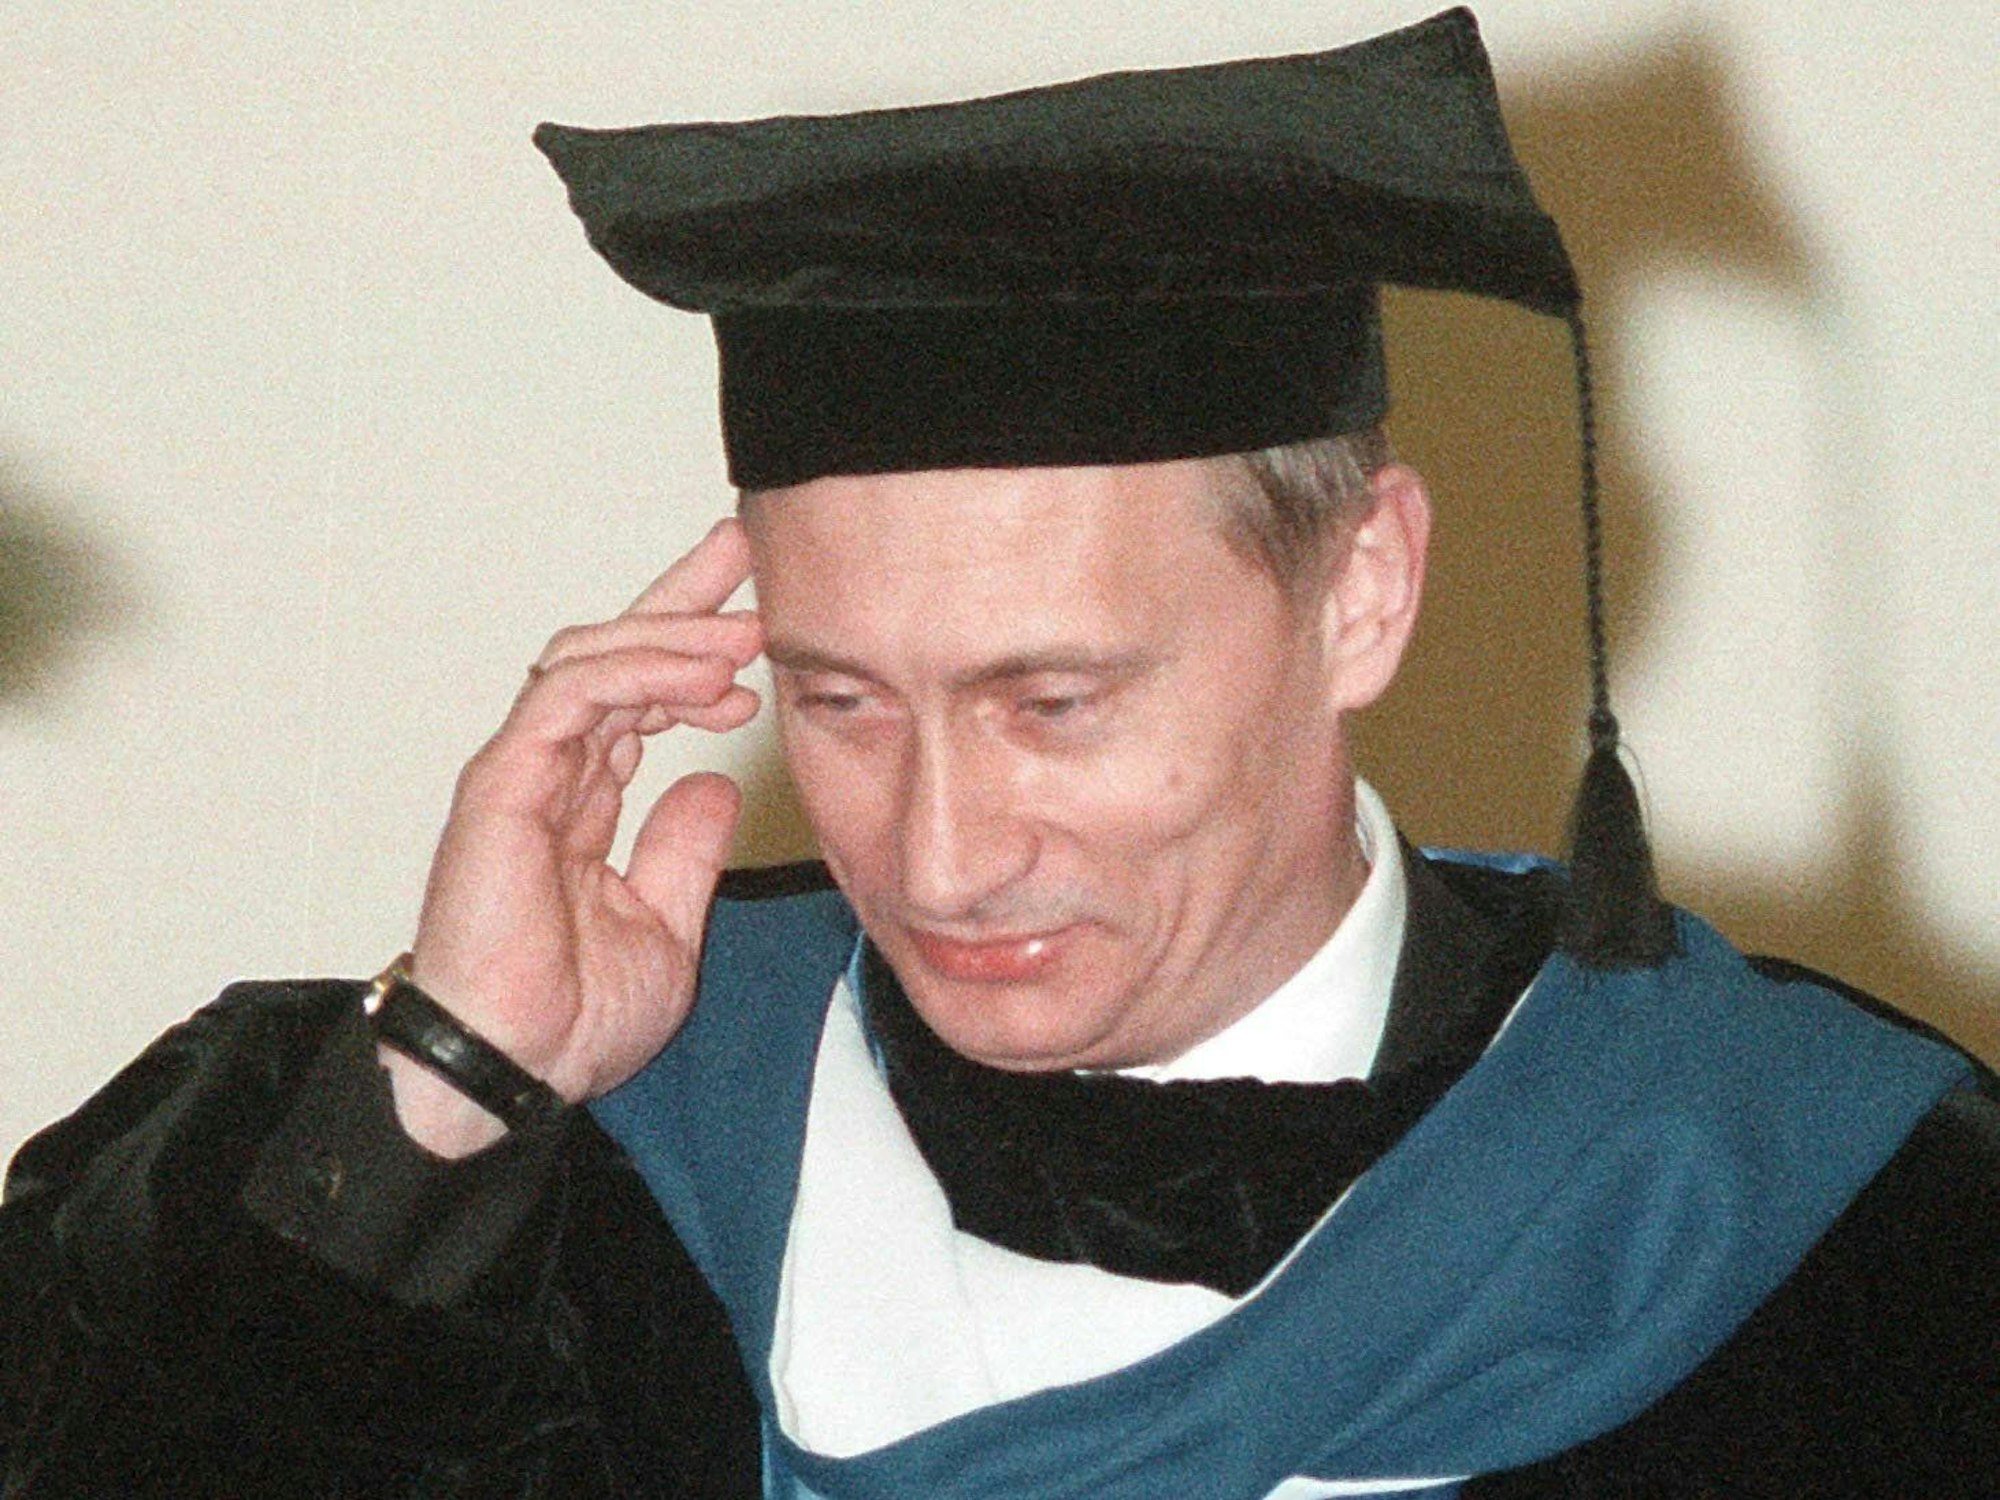 Der russische Präsident Wladimir Putin mit Talar und Doktorhut.